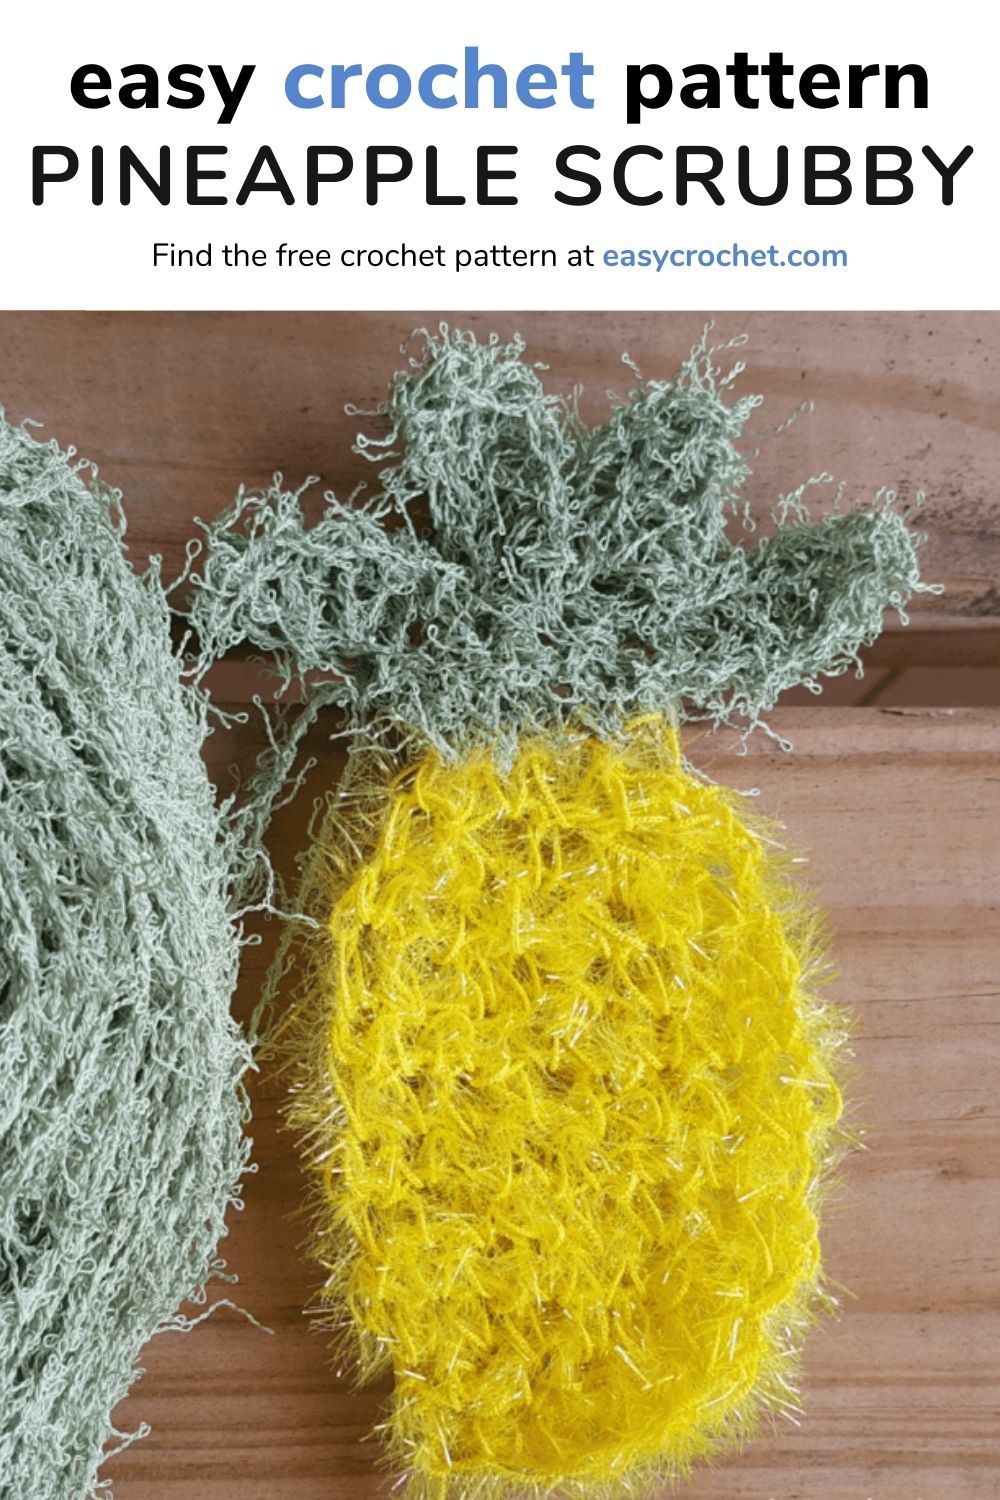 Crochet pineapple scrubby pattern 